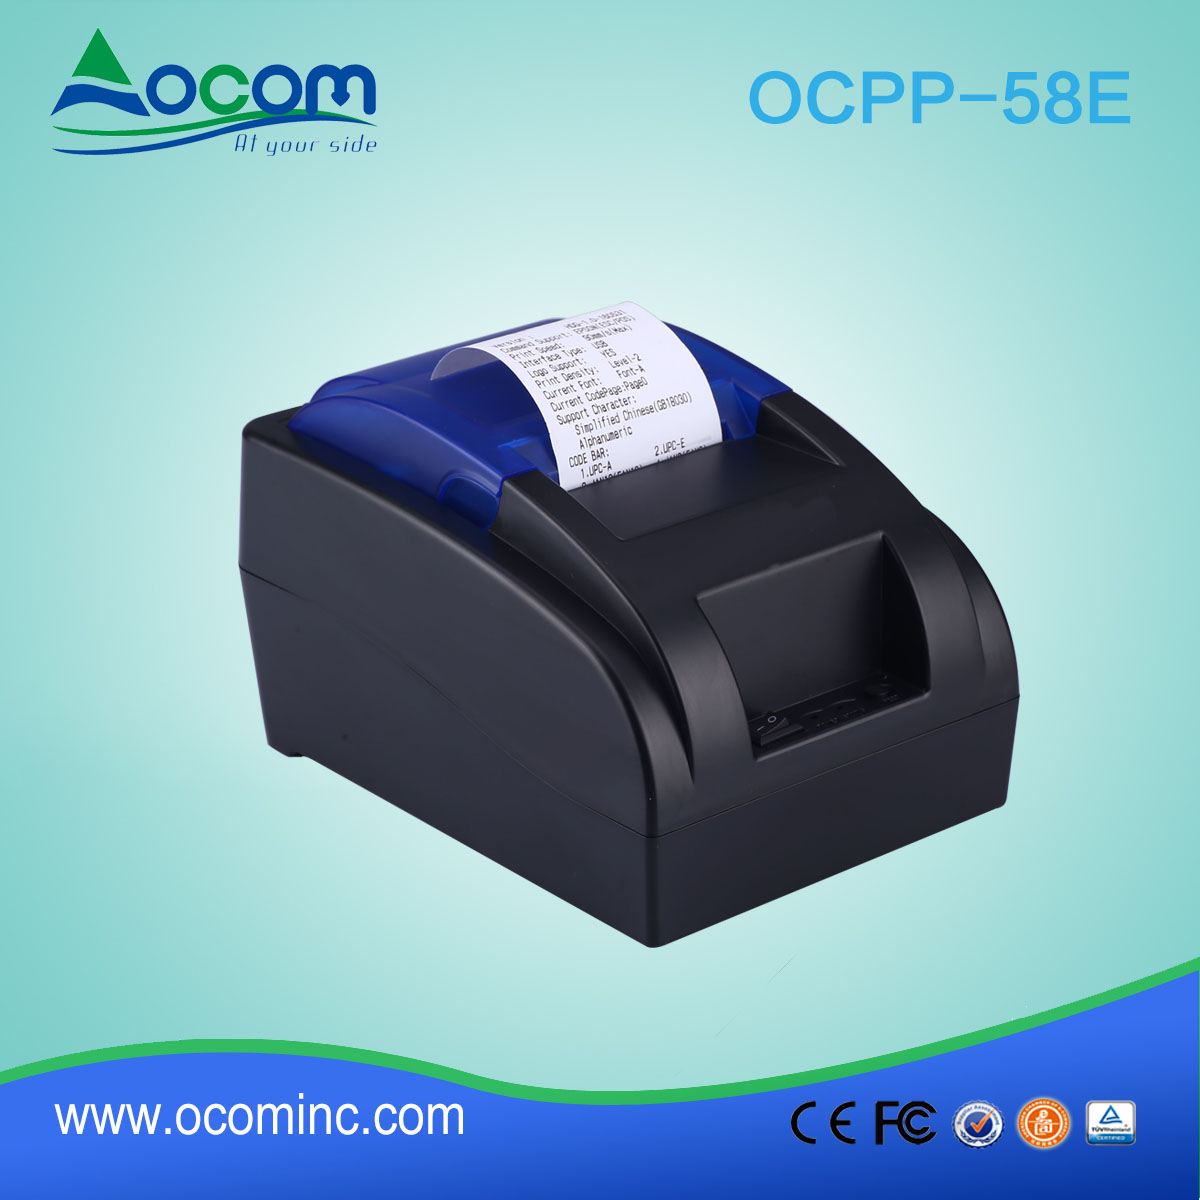 Impressora de recibos térmicos OCPP-58E de 58mm